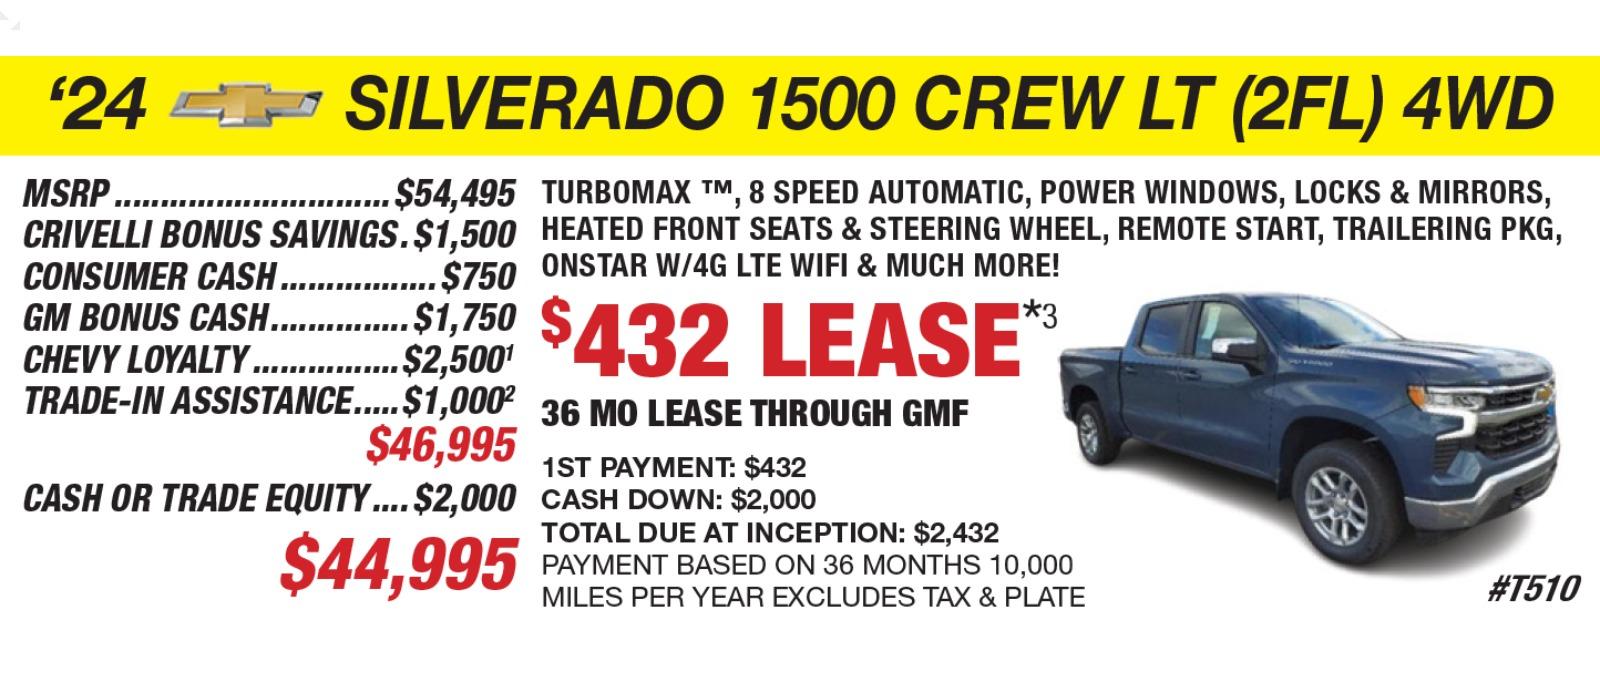 2024 Silverado 1500 Crew LT (2FL) 4WD Lease Offer